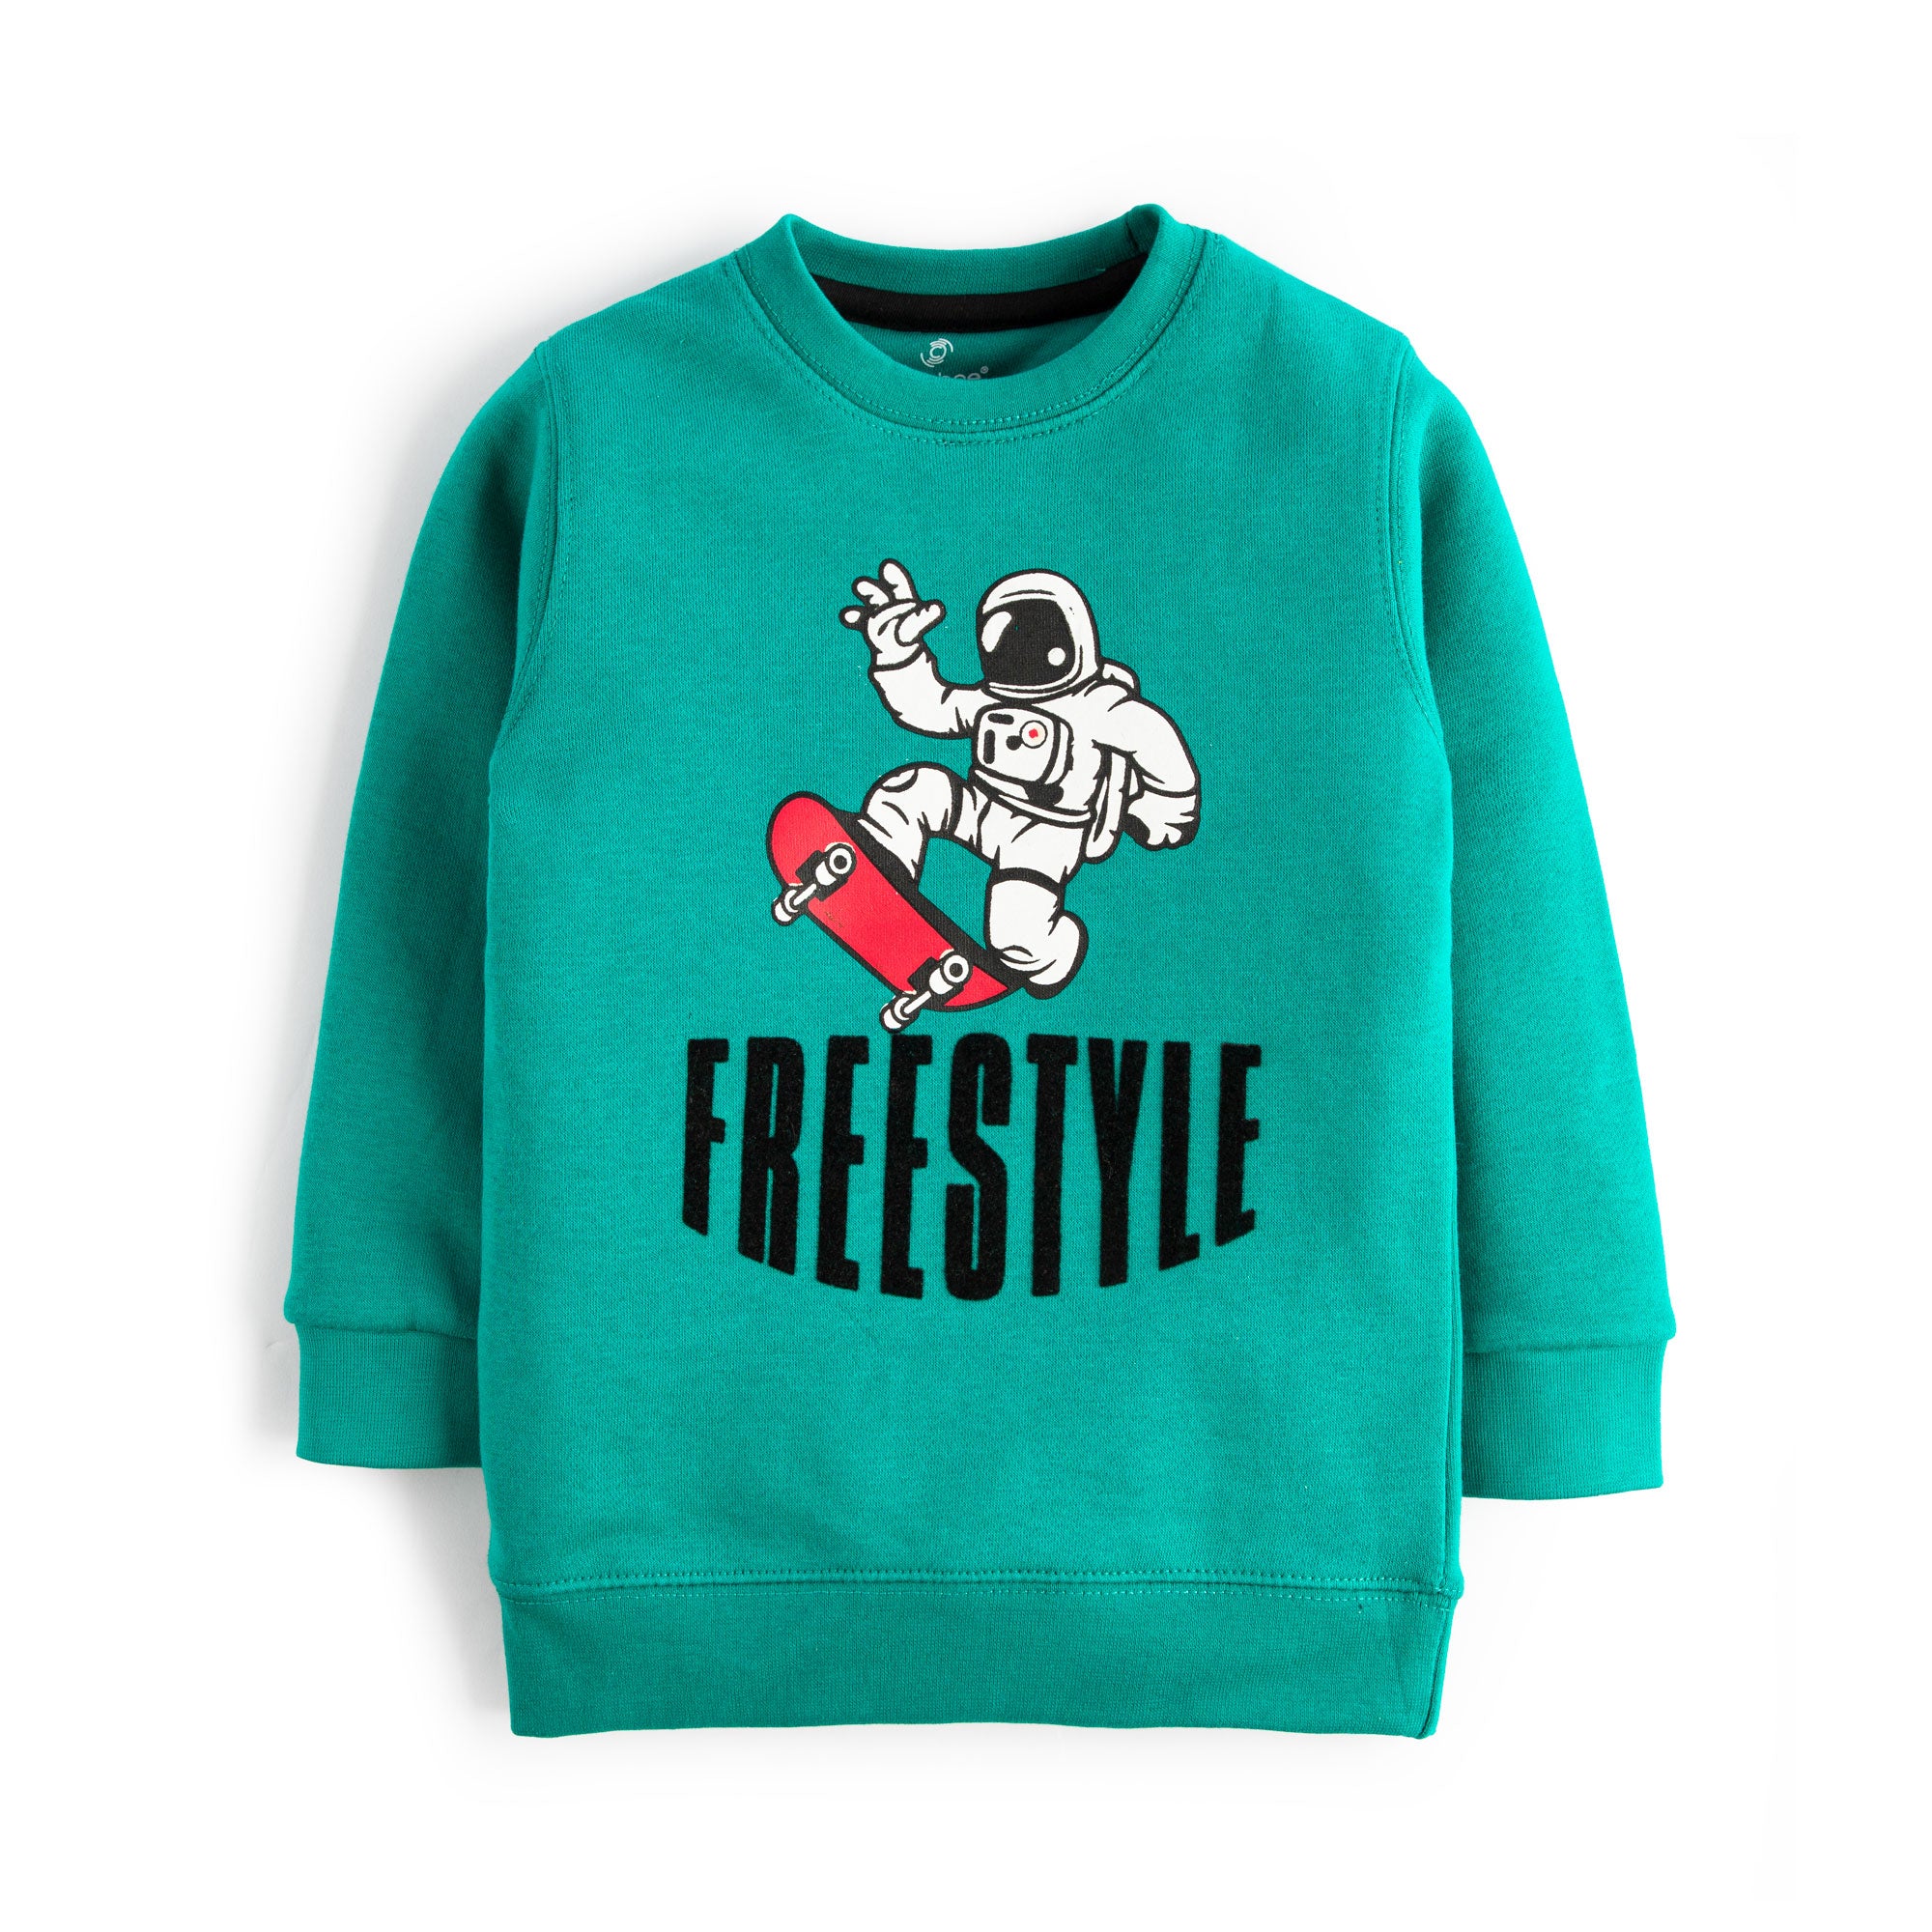 FreeStyle Sweatshirt